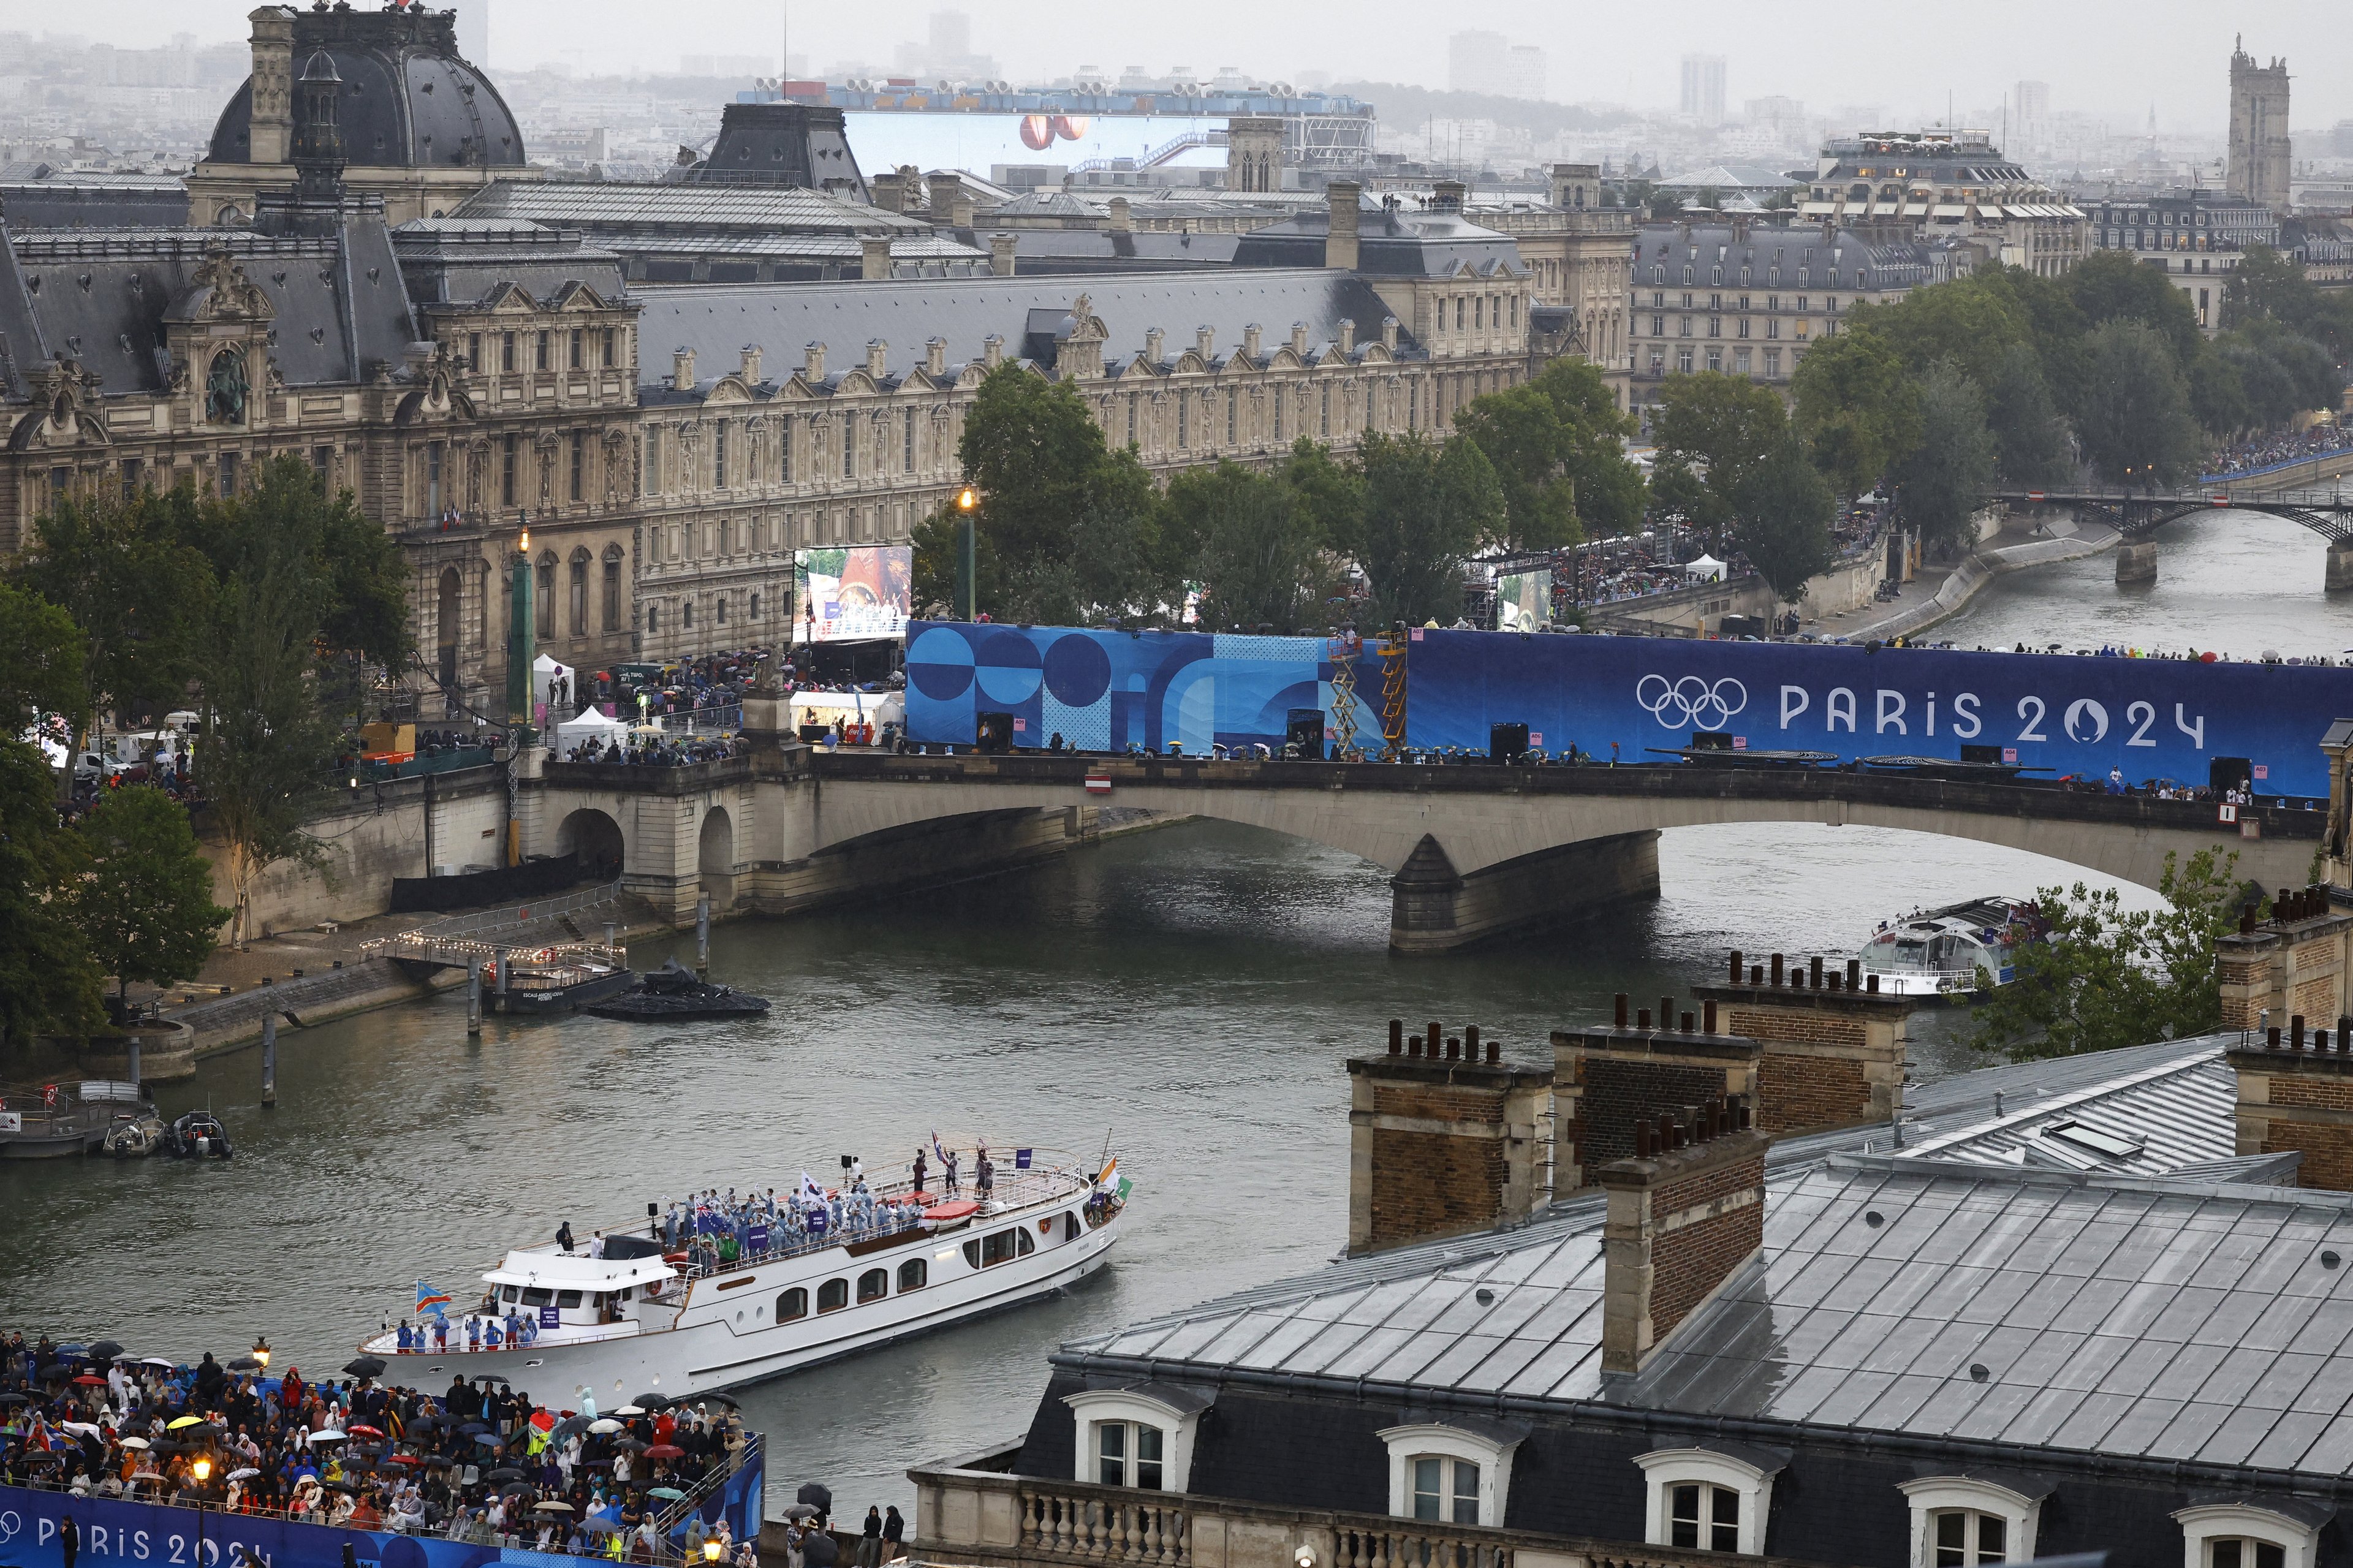 Atletas da Coreia do Sul, Costa do Marfim, Costa Rica e República Democrática do Congo a bordo de um barco no desfile flutuante passam pelo Museu do Louvre no rio Sena durante a cerimônia de abertura.